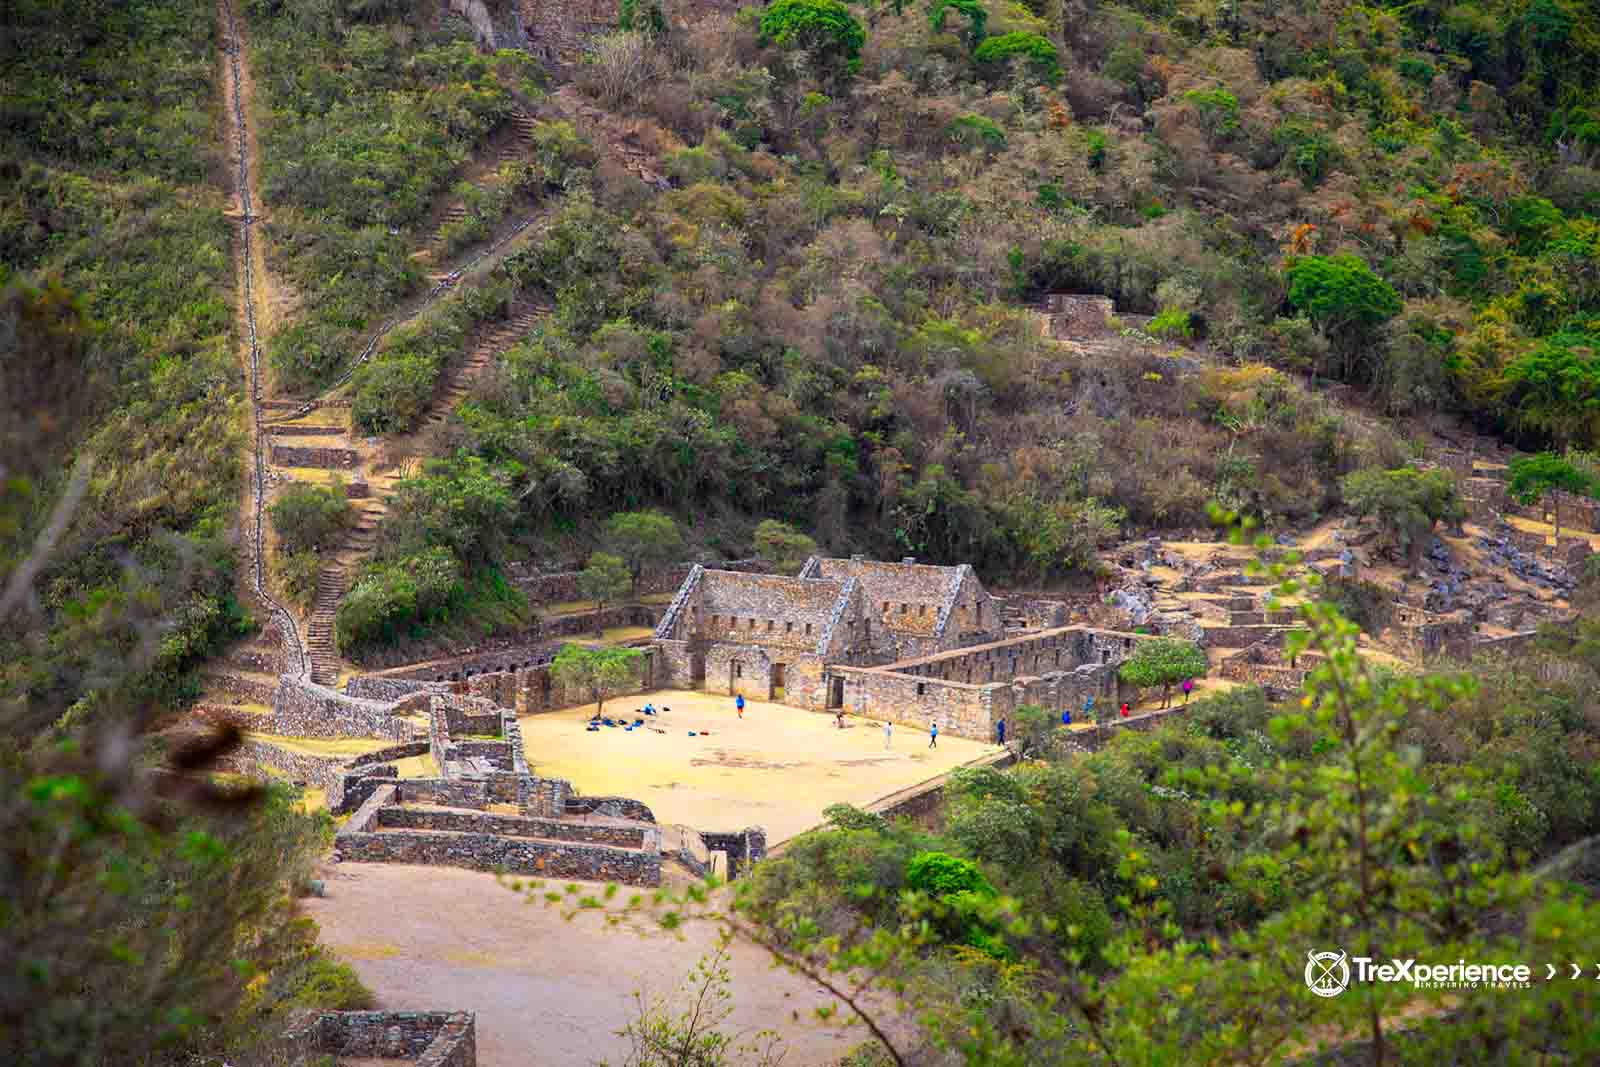 Choquequirao ruins trek in Peru | TreXperience